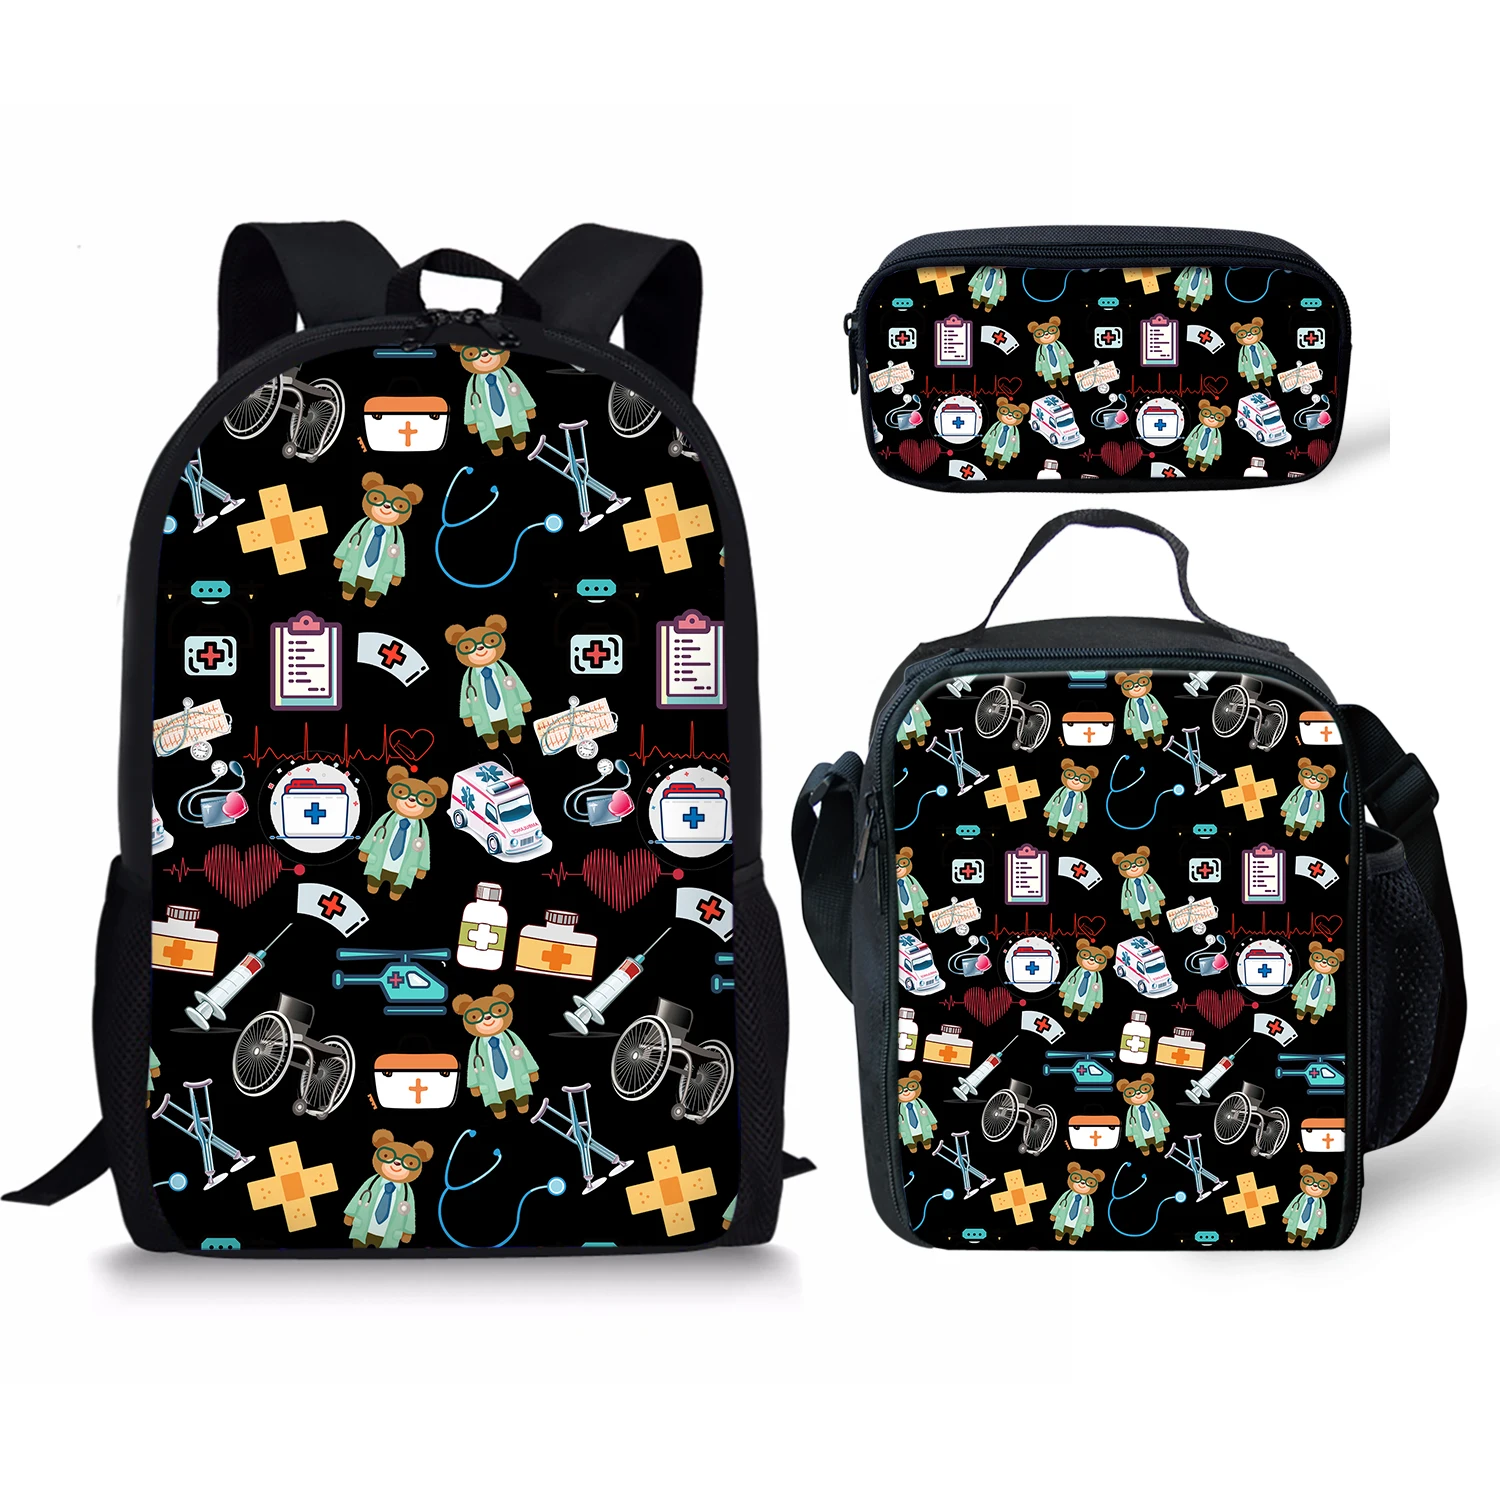 Школьные рюкзаки с принтом медсестры тема, сумка для карандашей и сумка для ланча, персонализированный Детский рюкзак, новый дизайн, рюкзак ...